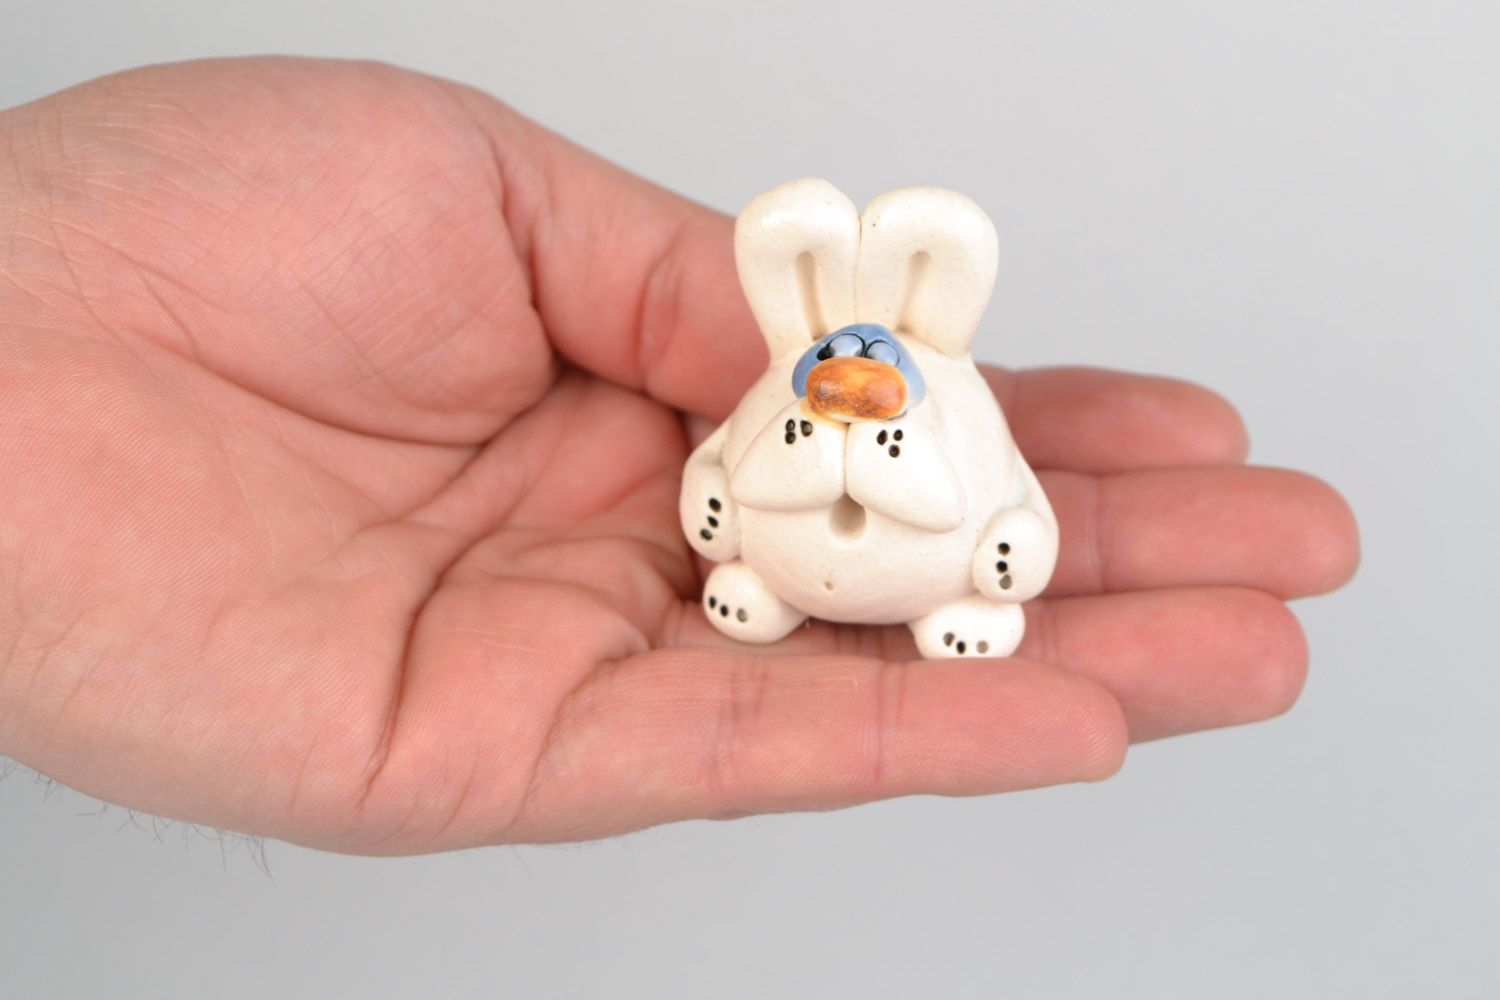 Авторская расписанная глазурью глиняная фигурка кролика малыша ручной работы фото 2